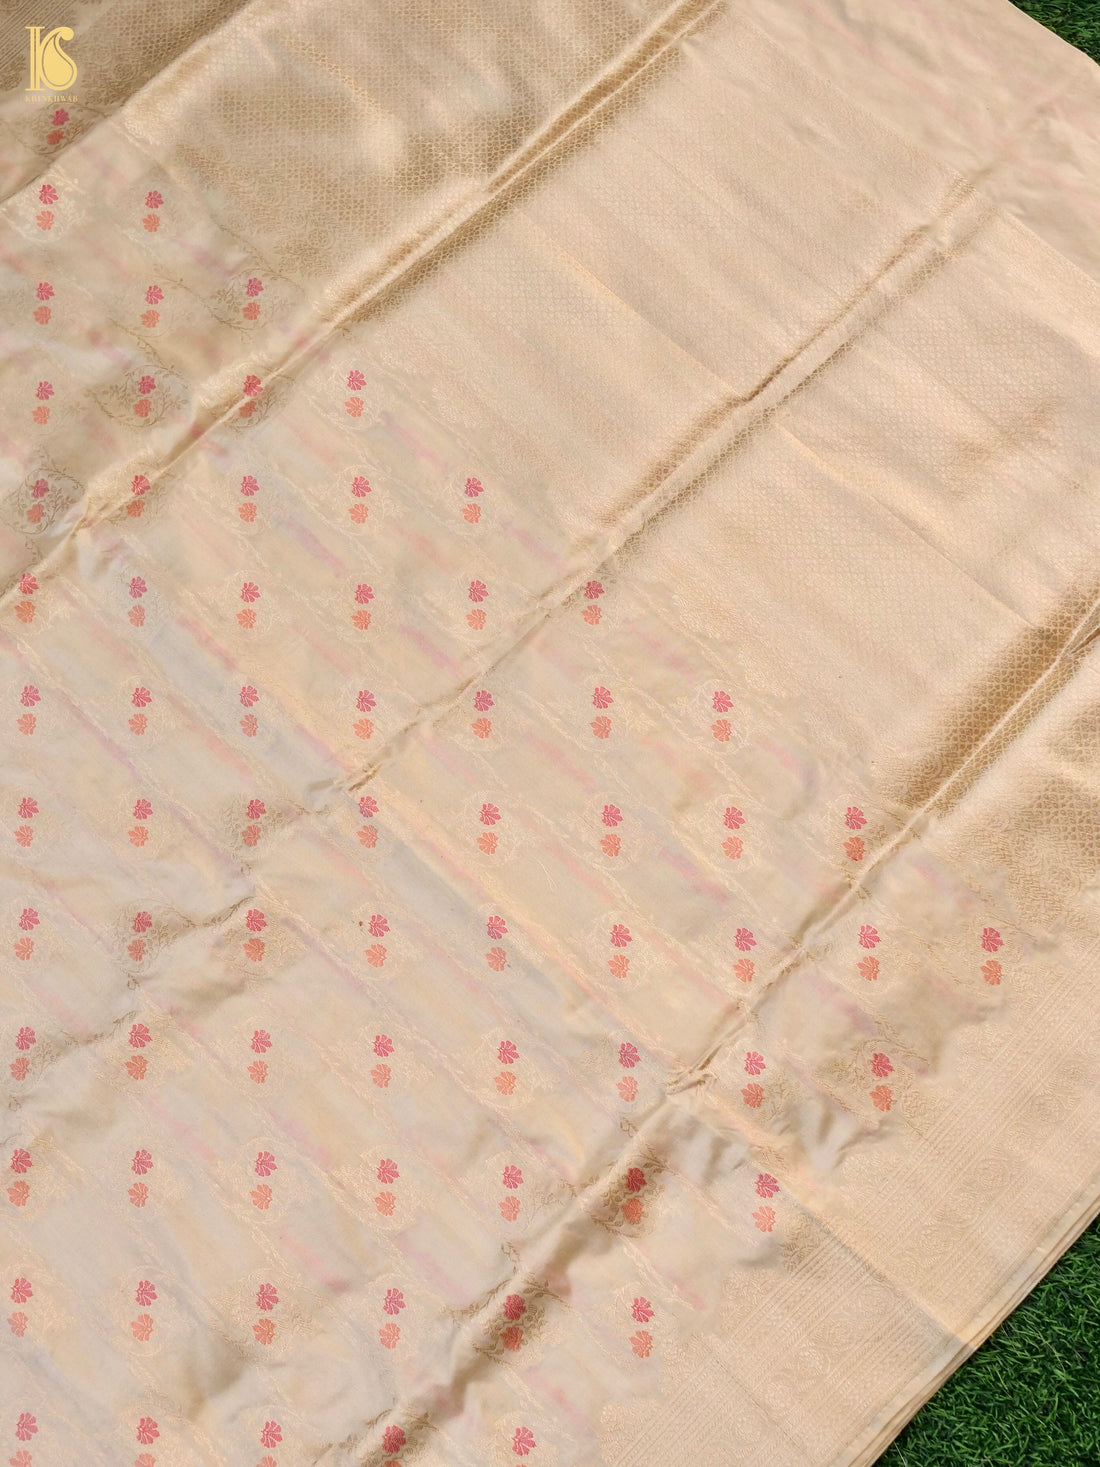 Handloom Banarasi Katan Silk Meenakari Saree